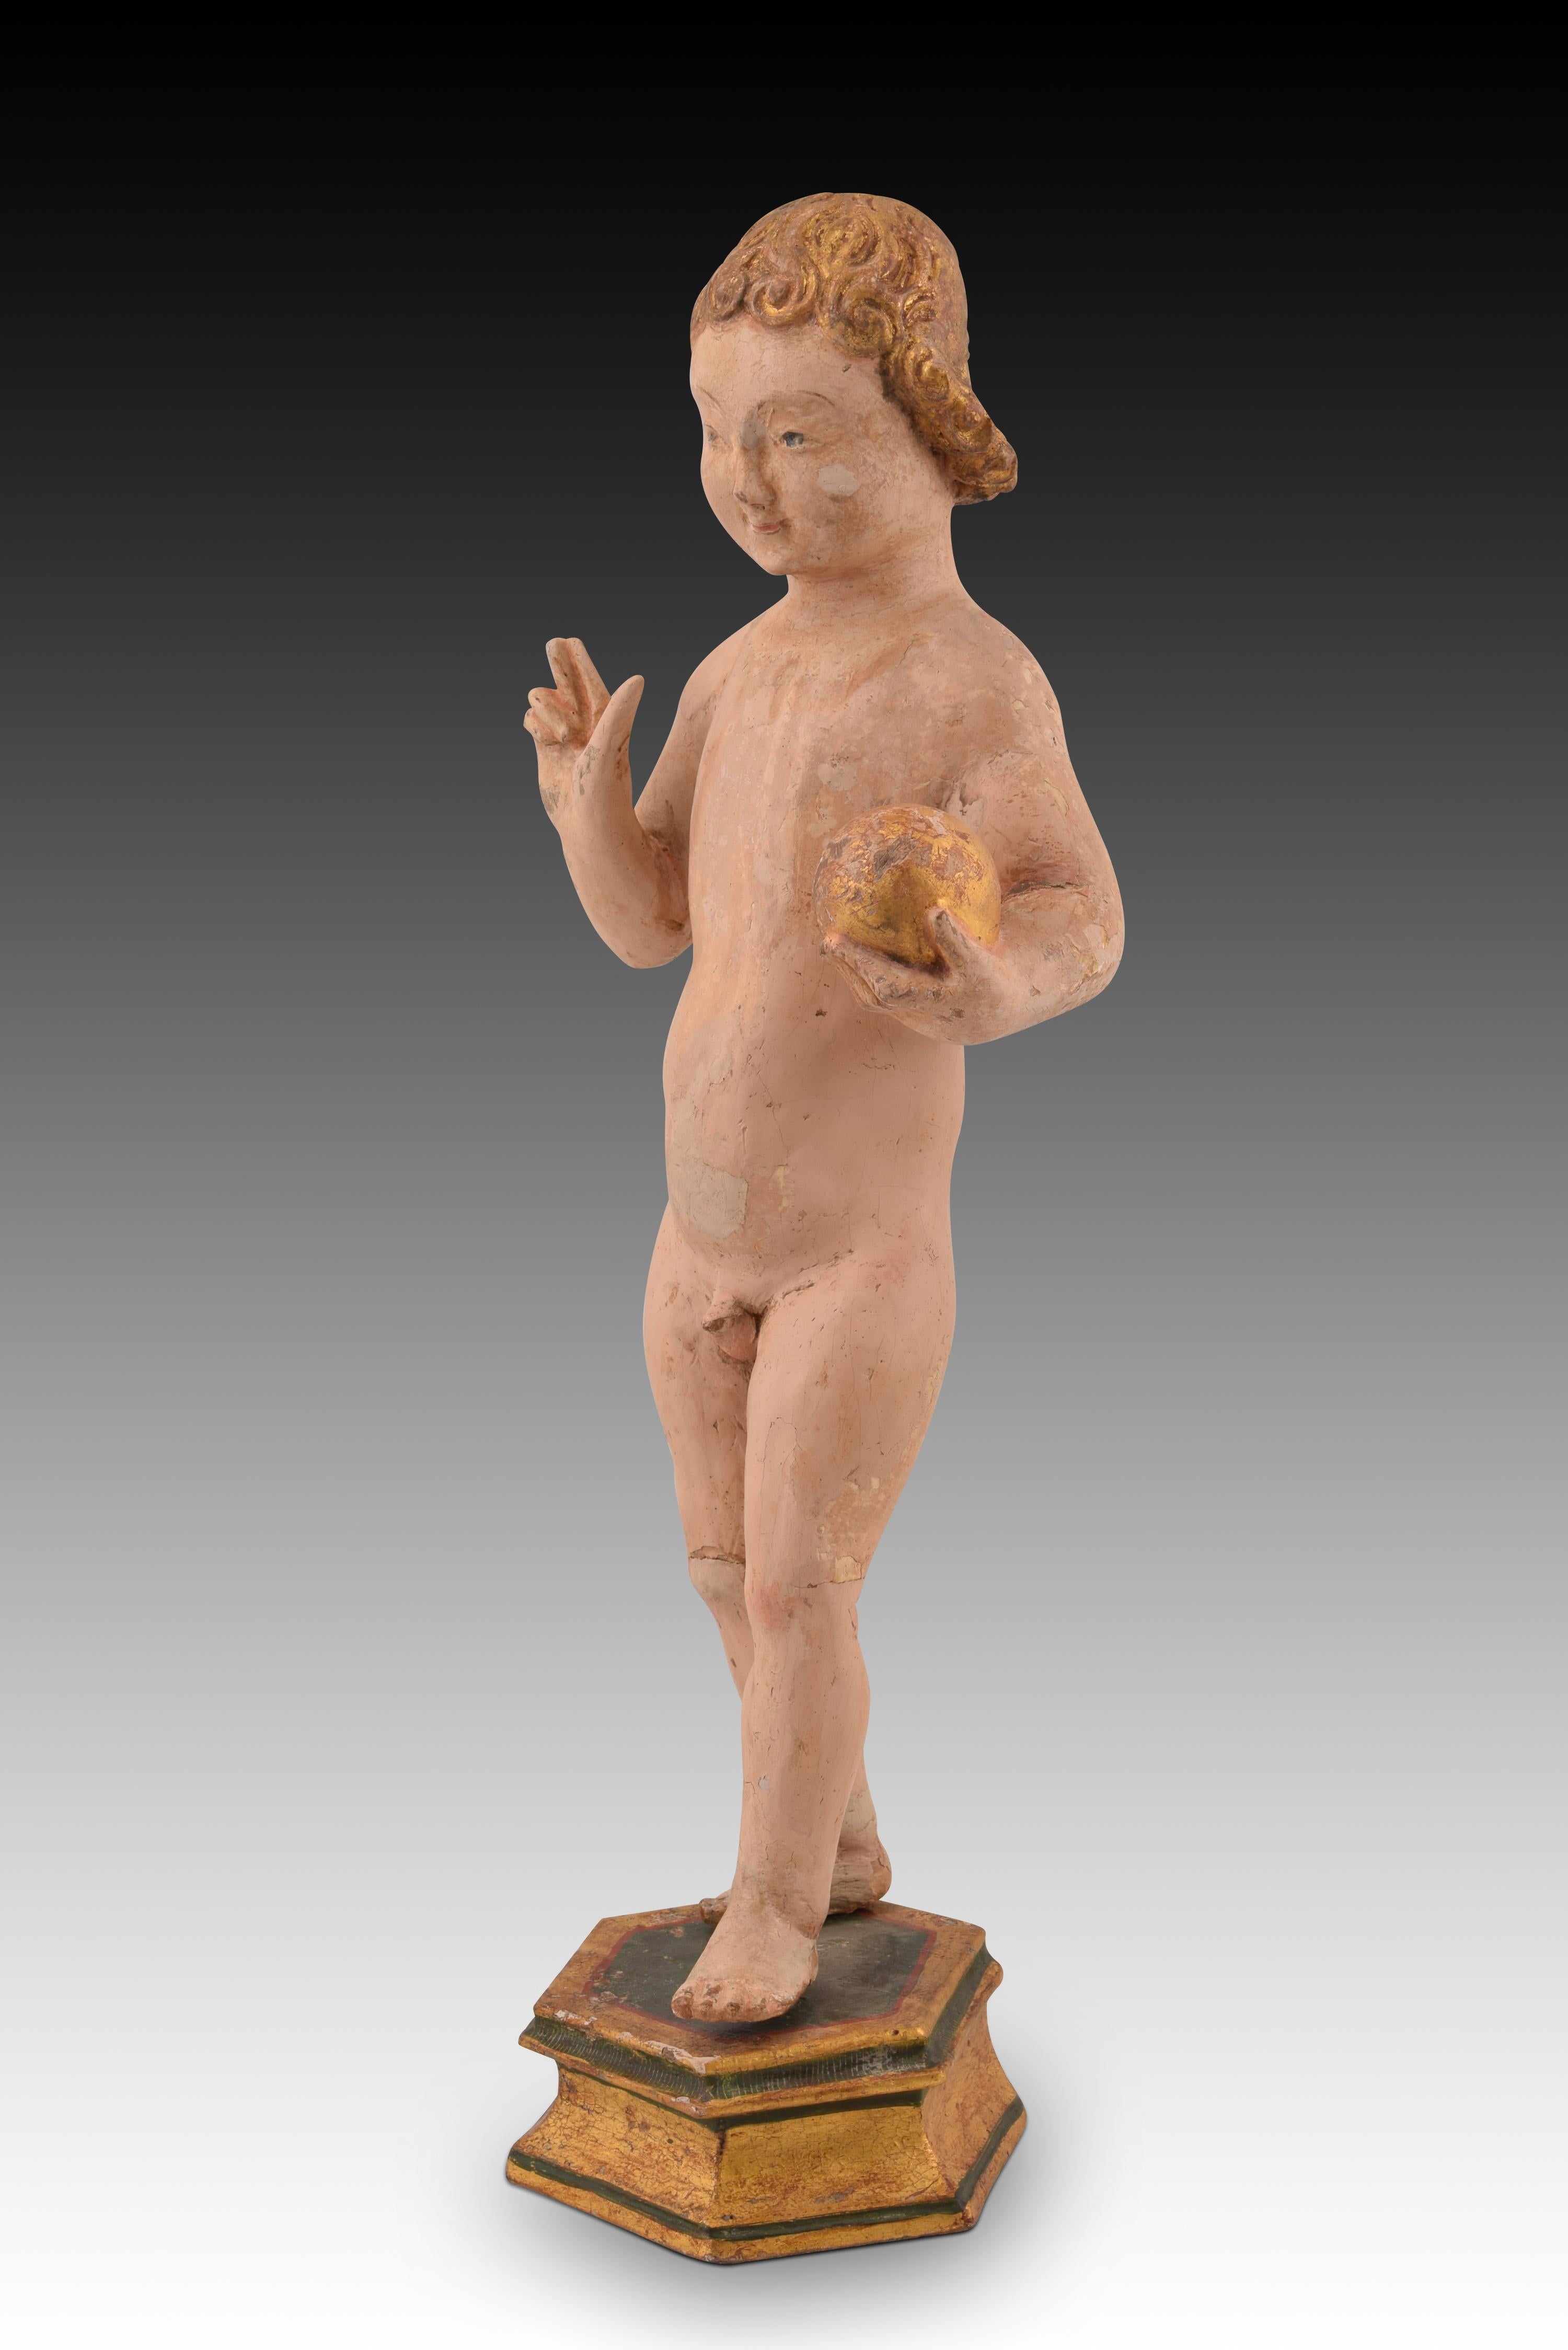 Enfant Jésus sur un piédestal. Bois polychrome. Malines, XVIe siècle, avec restaurations. 
Enfant Jésus en bois sculpté et polychrome, debout sur un piédestal de même matière, debout, avançant, la main droite bénissant et un orbe dans la gauche.